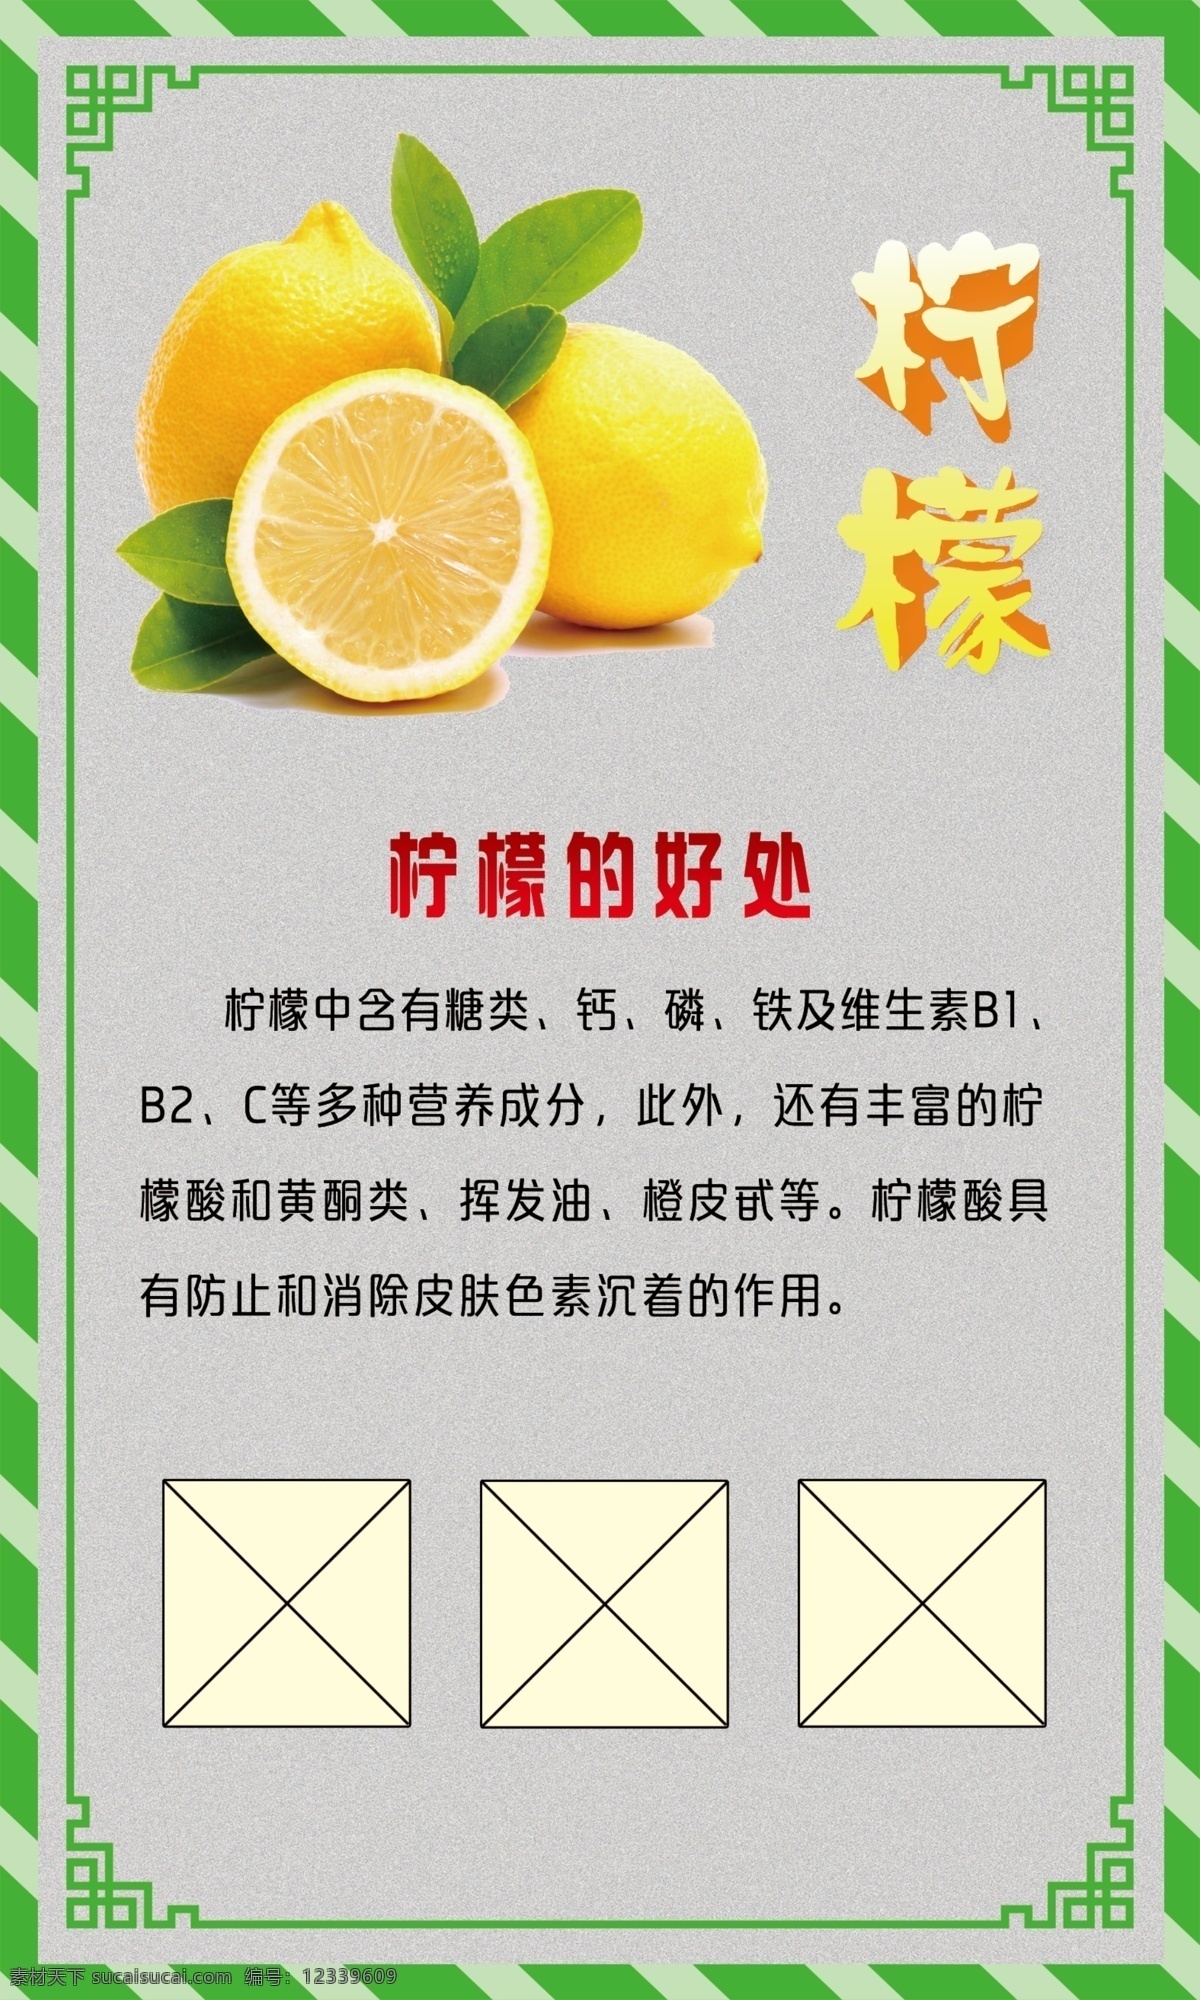 水果展板 柠檬展板 柠檬图片 柠檬矢量字 柠檬3d字 柠檬的好处 绿色边框 高档展板 可修改 分层 柠檬艺术字 绿色花边框 柠檬广告设计